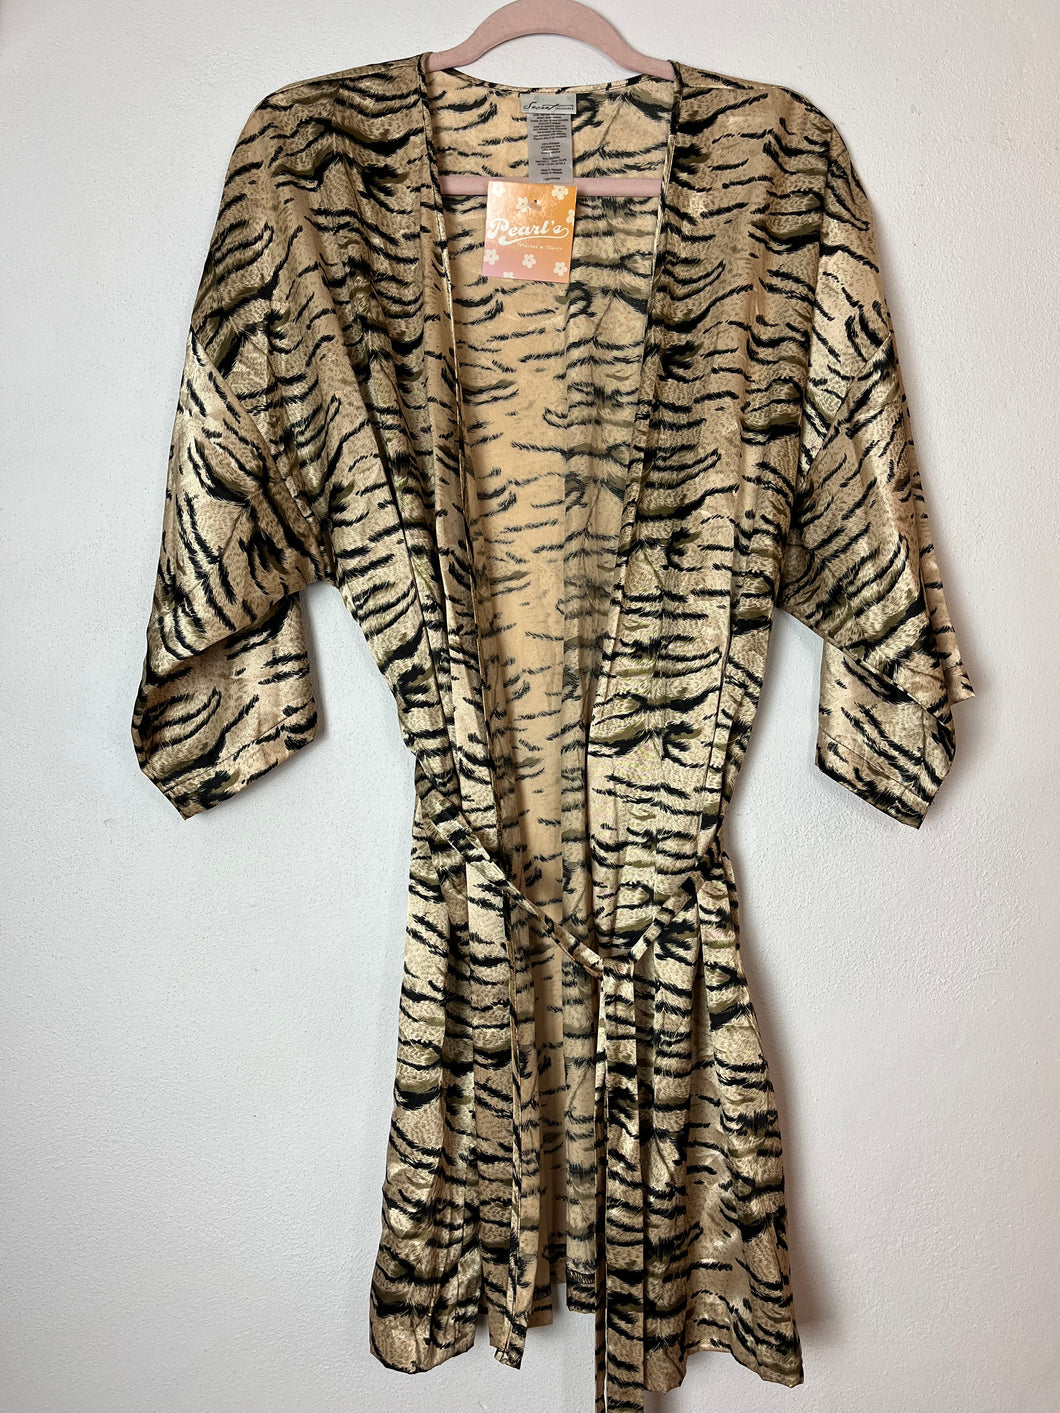 Tiger Print Satin Robe - Large